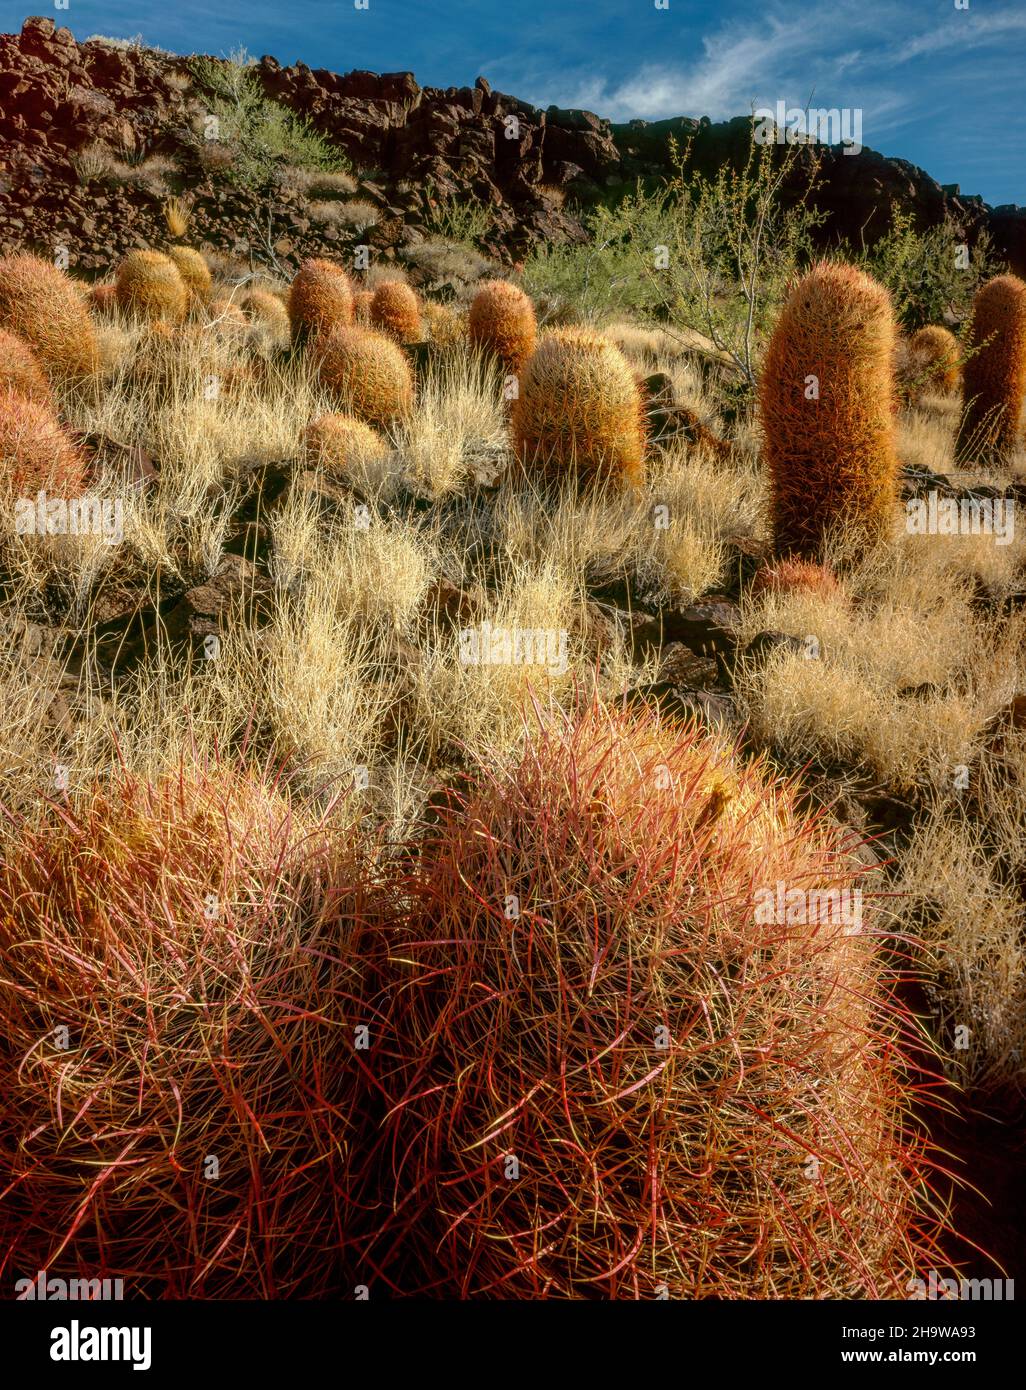 Cottontops, Echinocactus polycephalus, Woods Mountains, réserve nationale de Mojave, Californie Banque D'Images